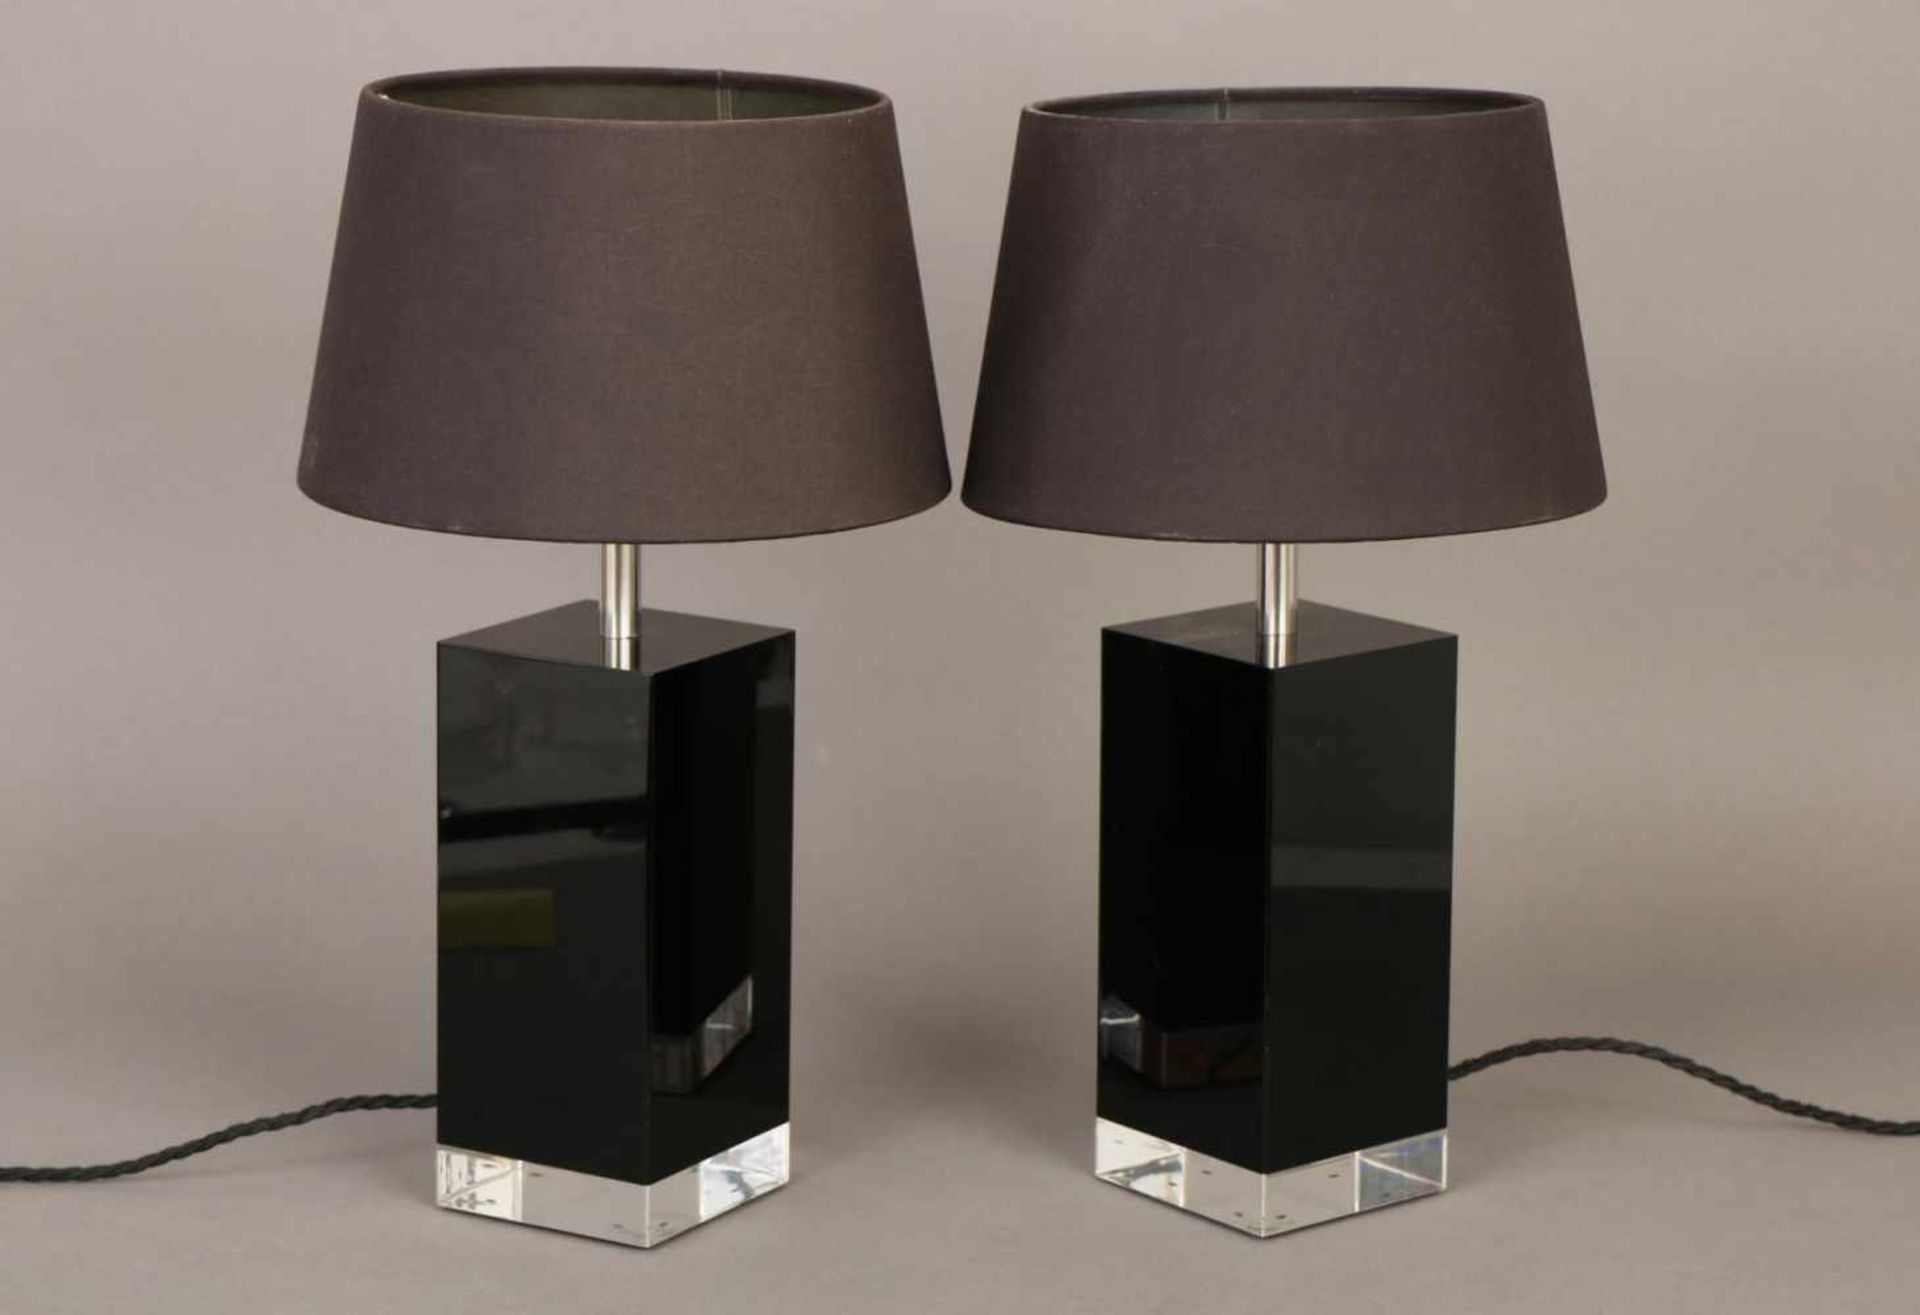 Paar Tischlampenunbekannter Hersteller/Entwurf des 21. Jhdts., schwarzes und farbloses Acryl,